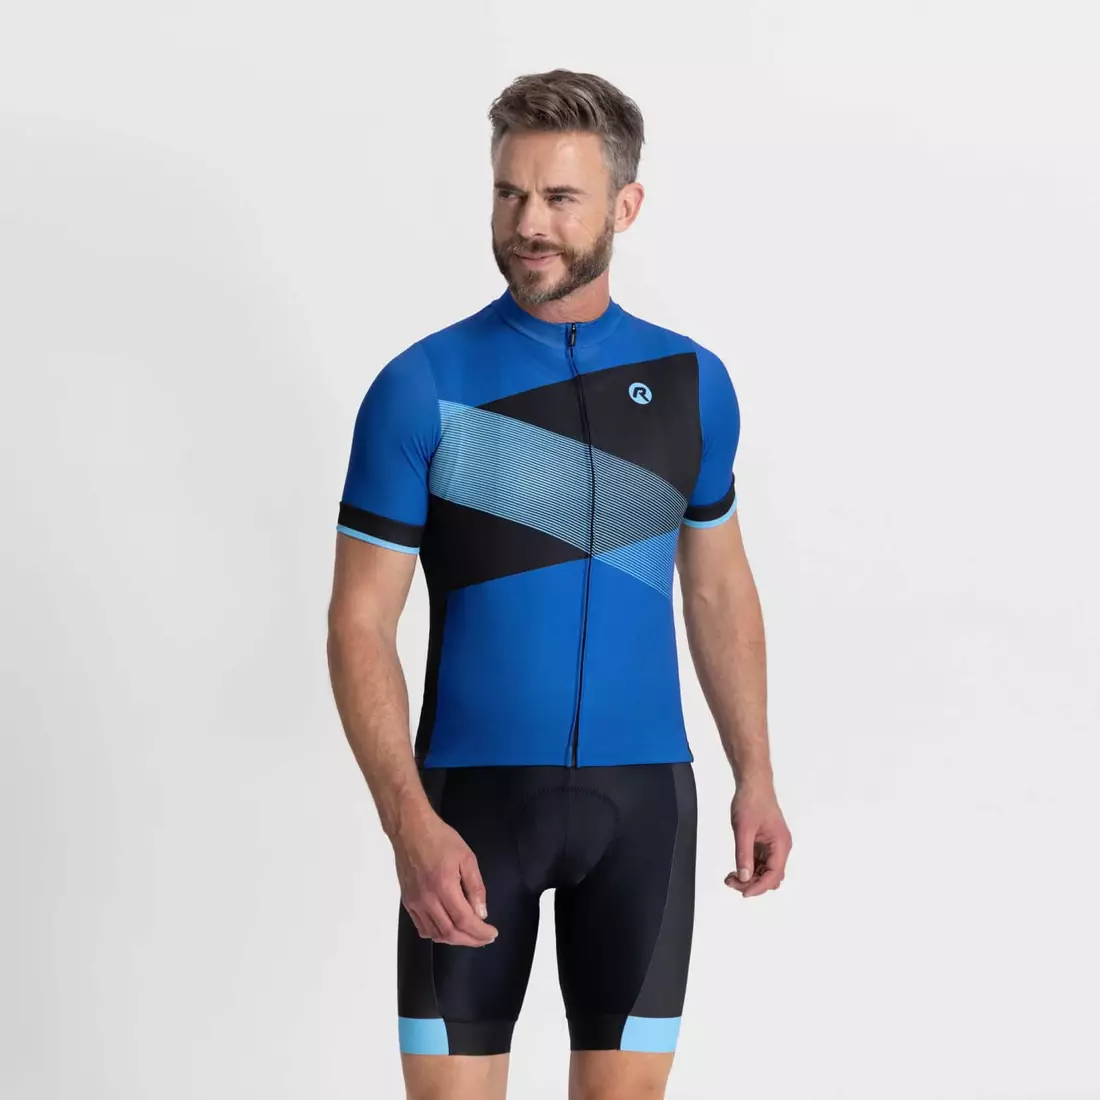 Rogelli GROOVE męska koszulka rowerowa, niebieska